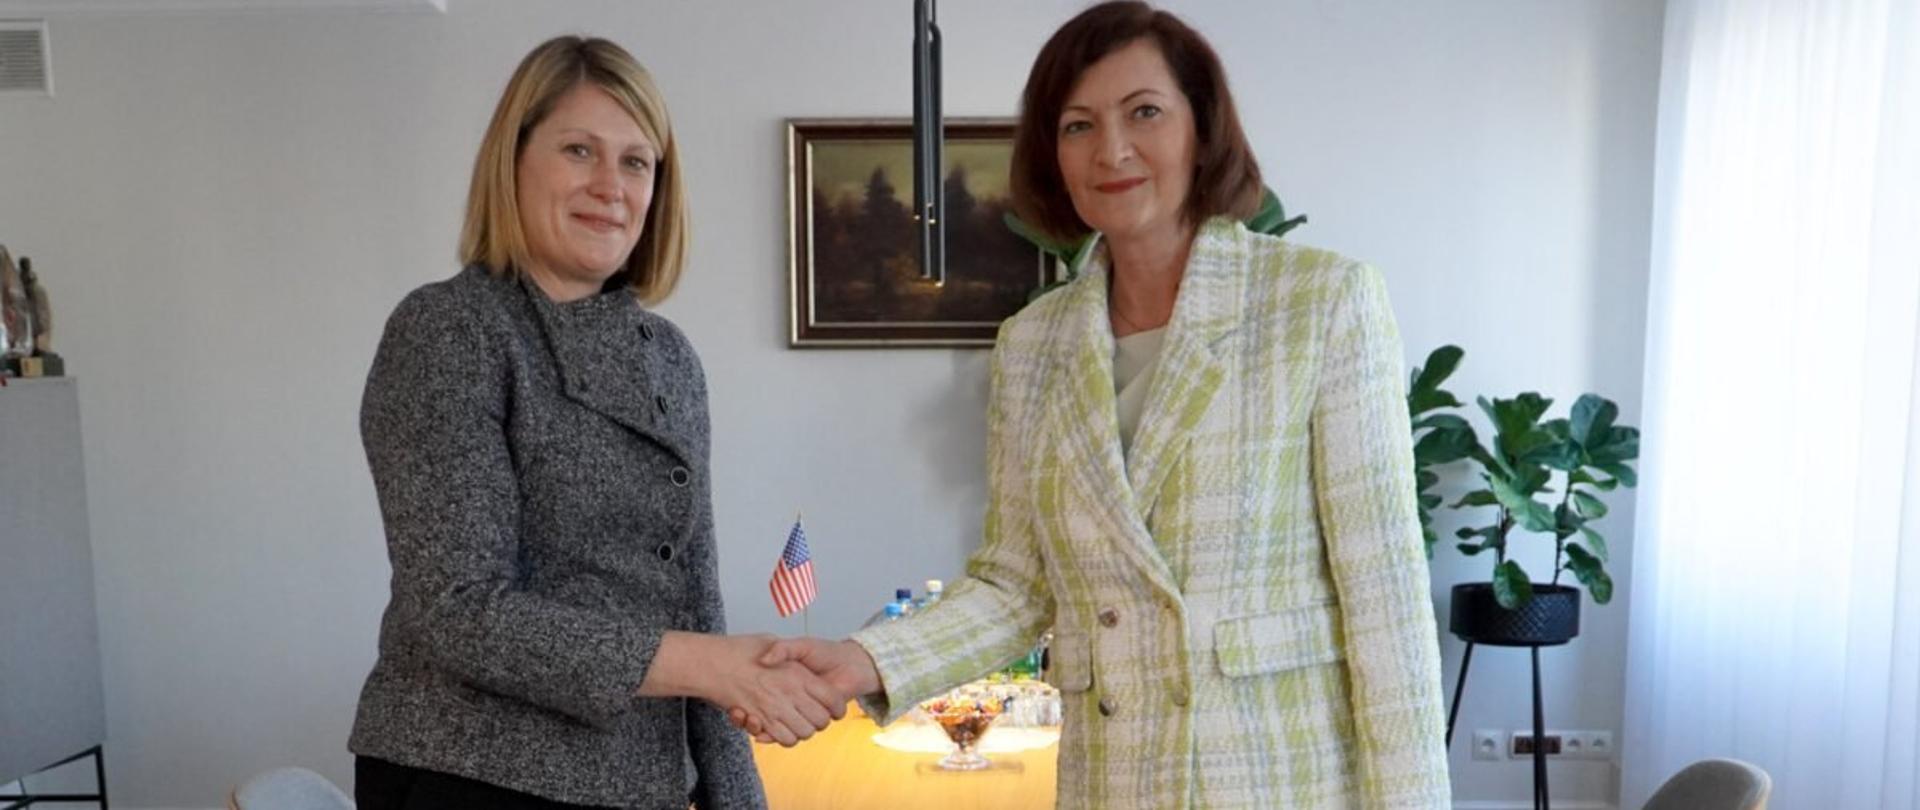 Konsul generalny Stanów Zjednoczonych w Krakowie Erin Nickerson i wojewoda podkarpacki Ewa Leniart podczas oficjalnej wizyty w Podkarpackim Urzędzie Wojewódzkim w Rzeszowie.